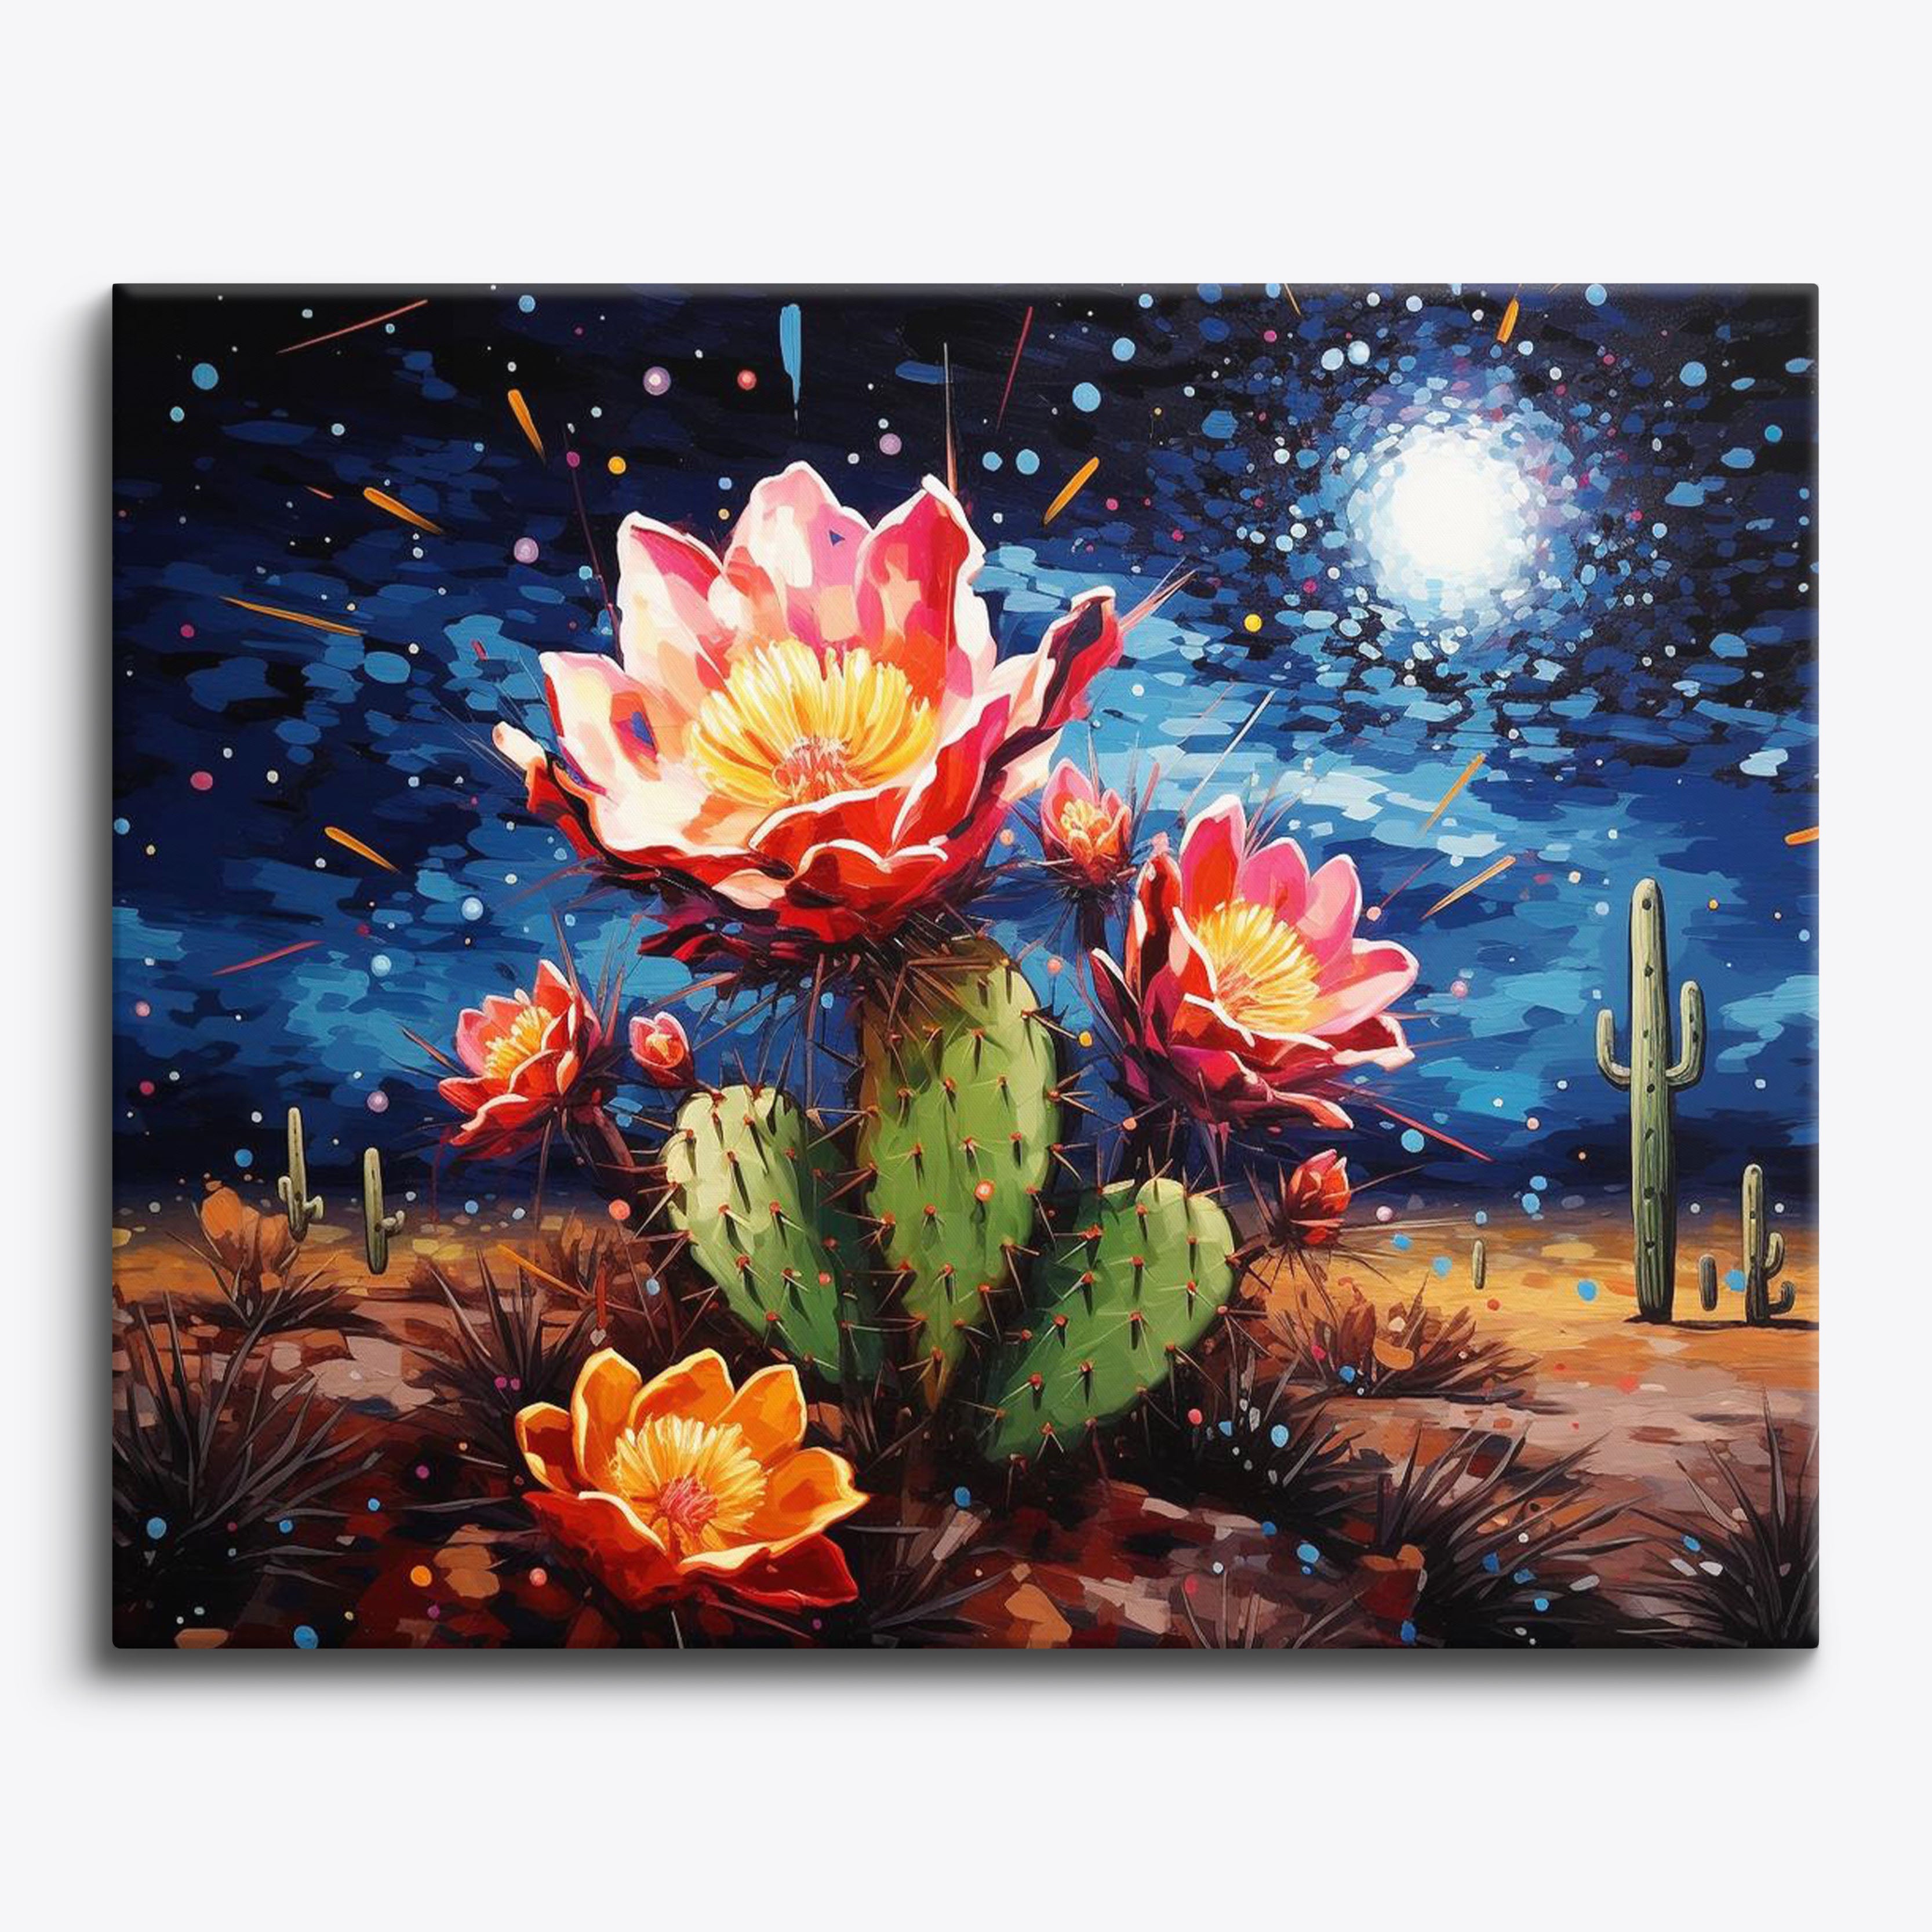 Starry Cactus No Frame